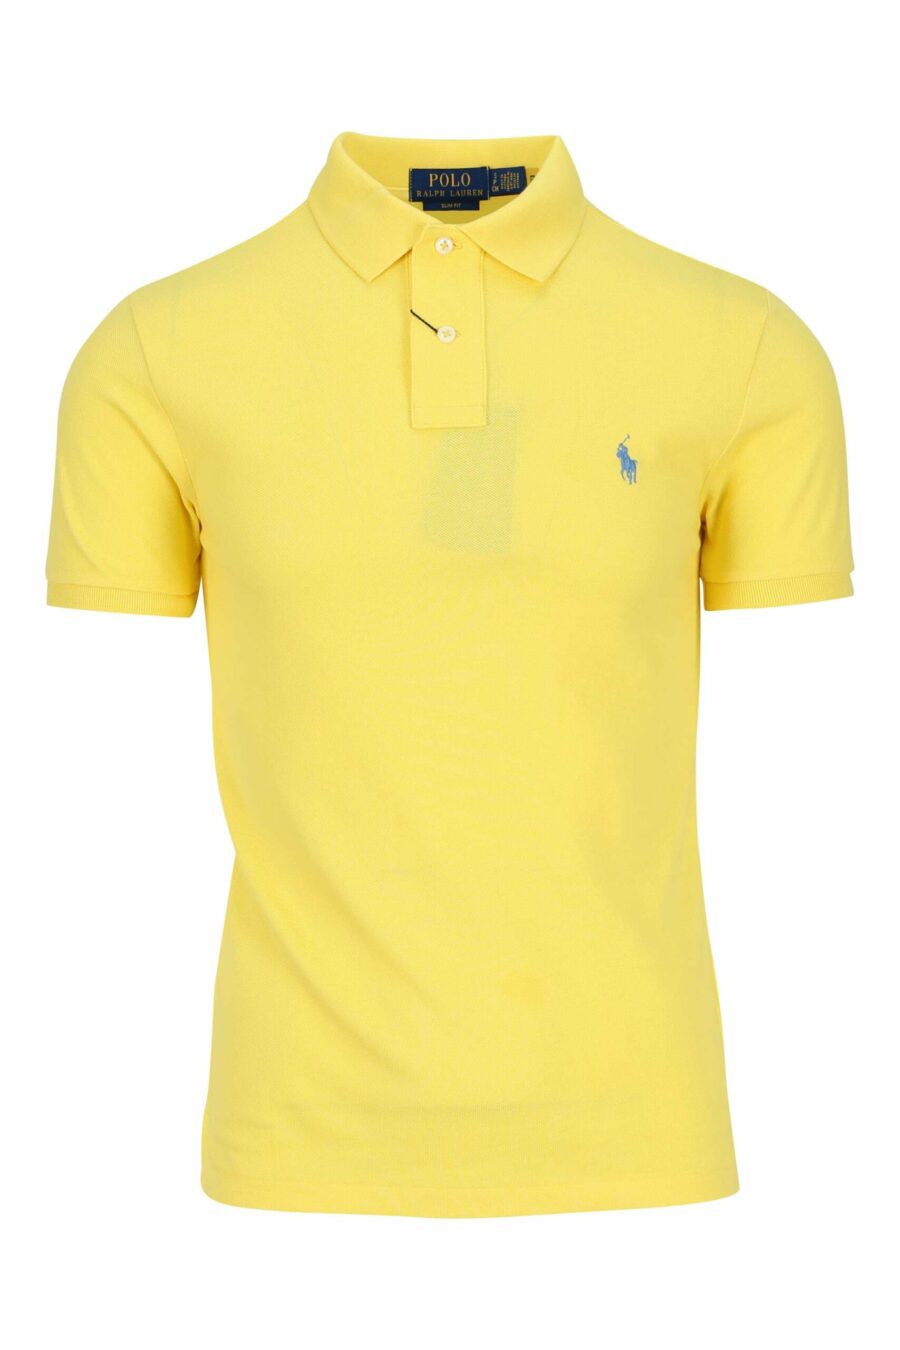 T-shirt amarela e azul com mini-logotipo "polo" - 3616535972186 scaled